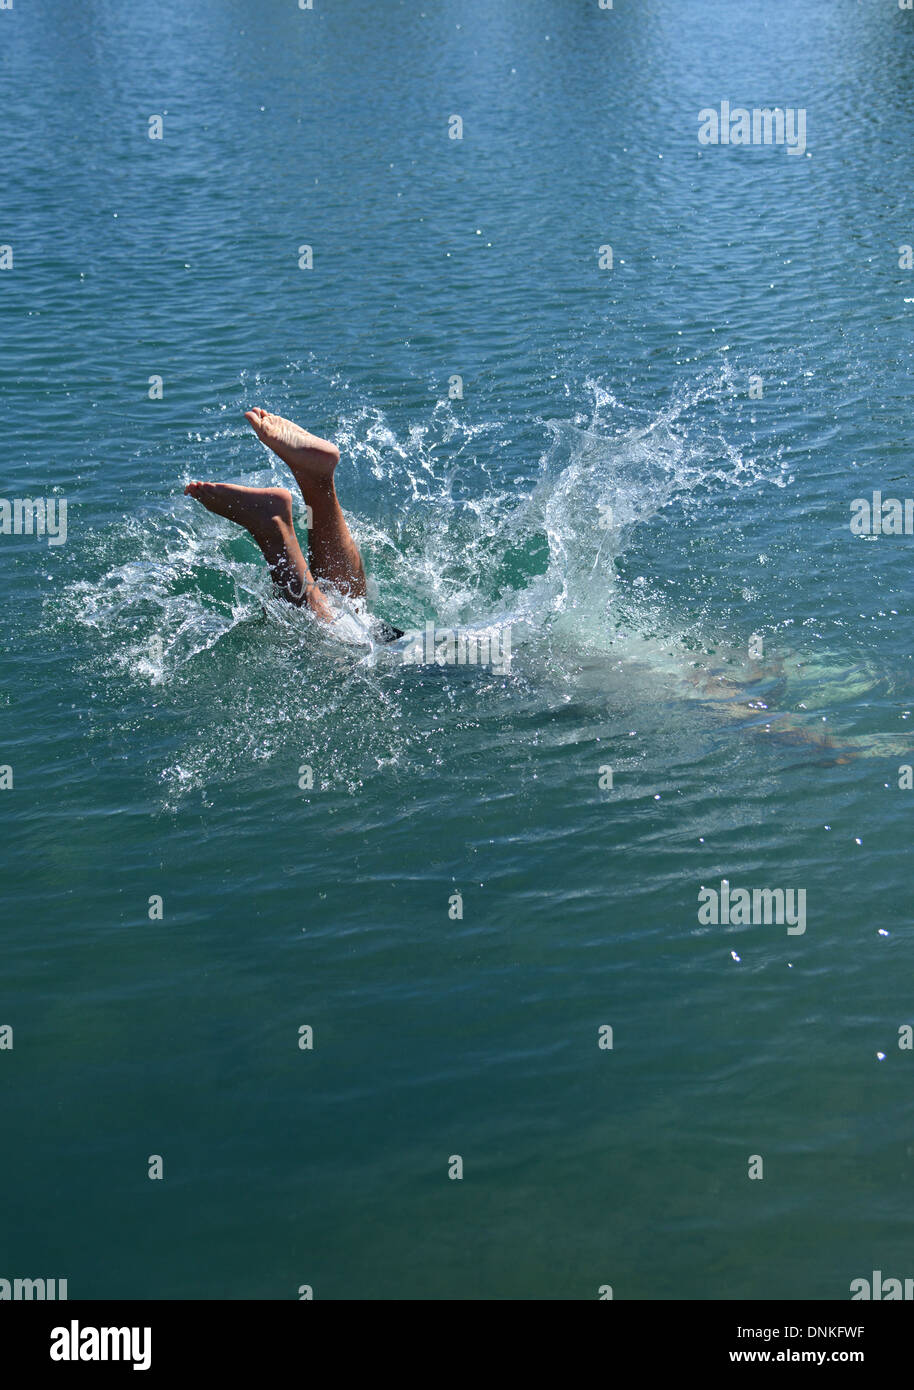 Saltar! Hombre de zambullirse en la piscina descubierta, sólo mostrando los pies fuera del agua Foto de stock